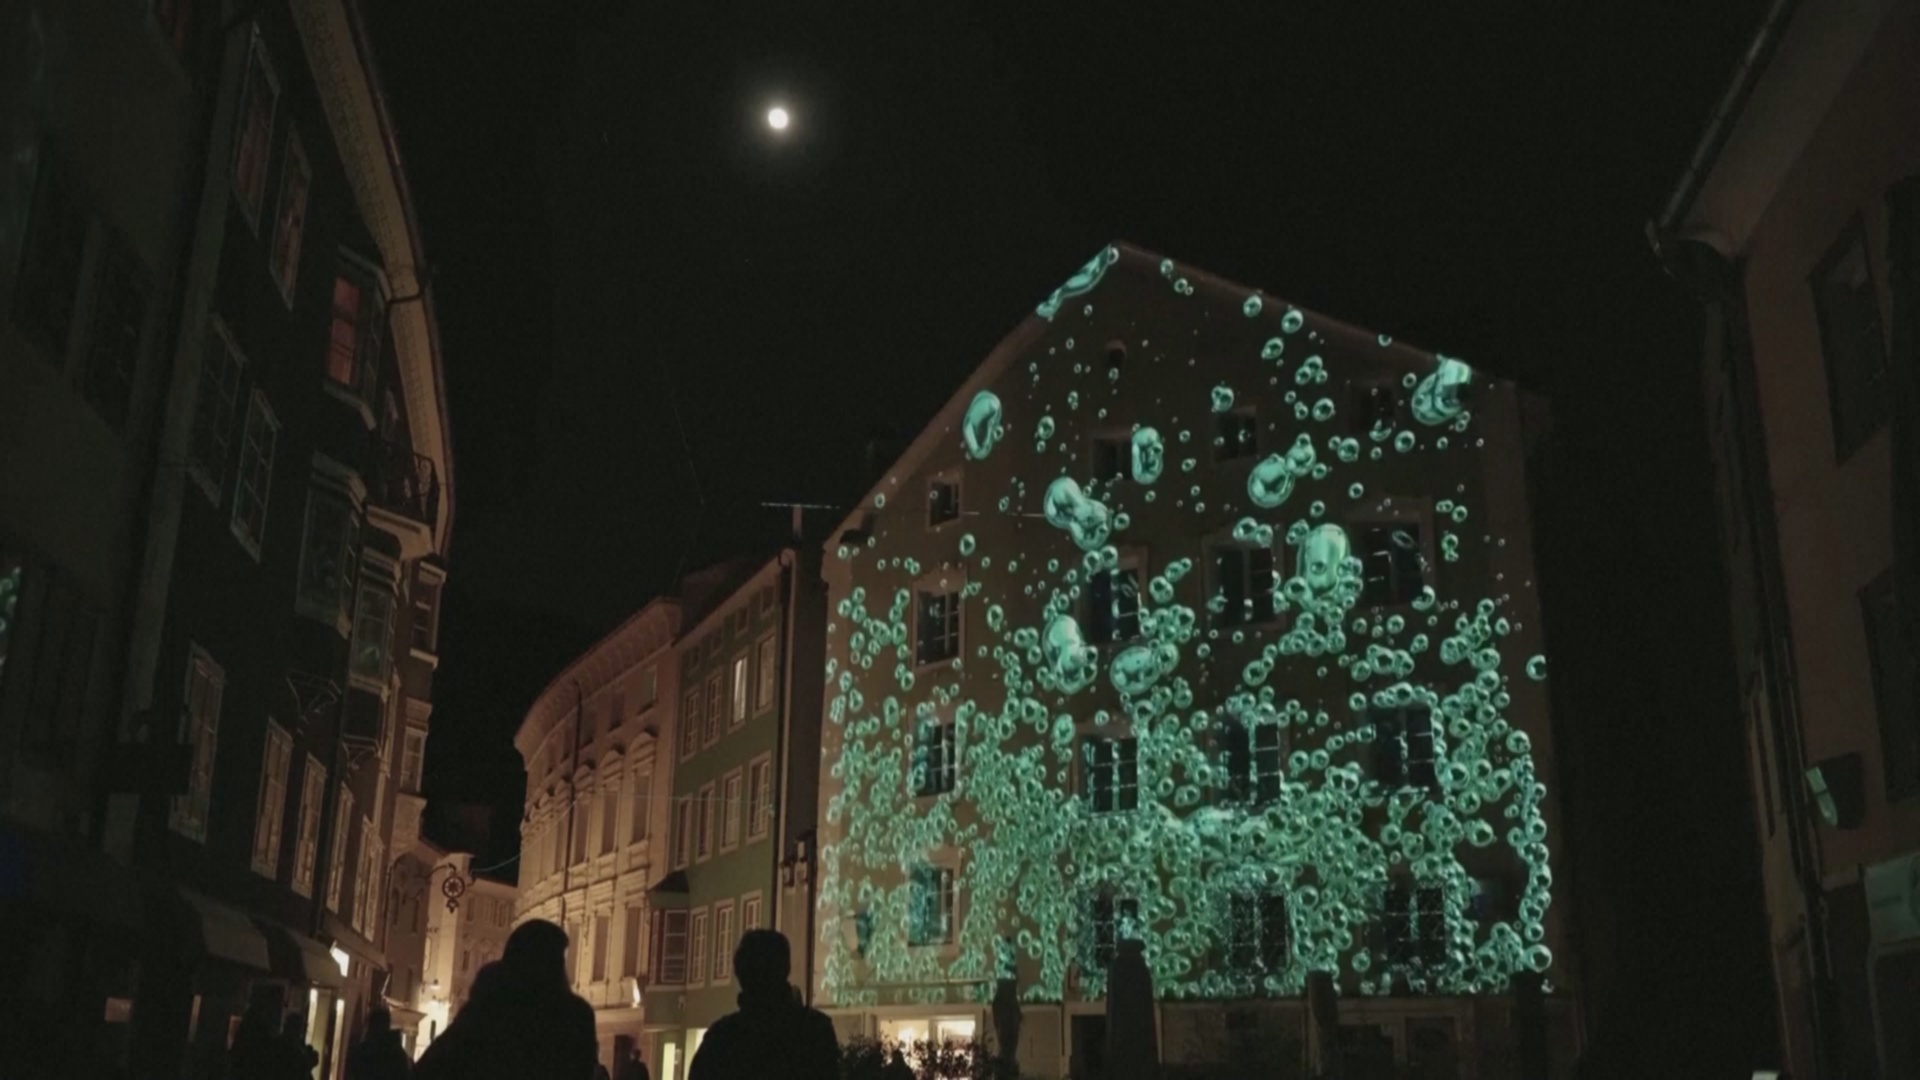 50 световых инсталляций украсили итальянский город в альпийской долине